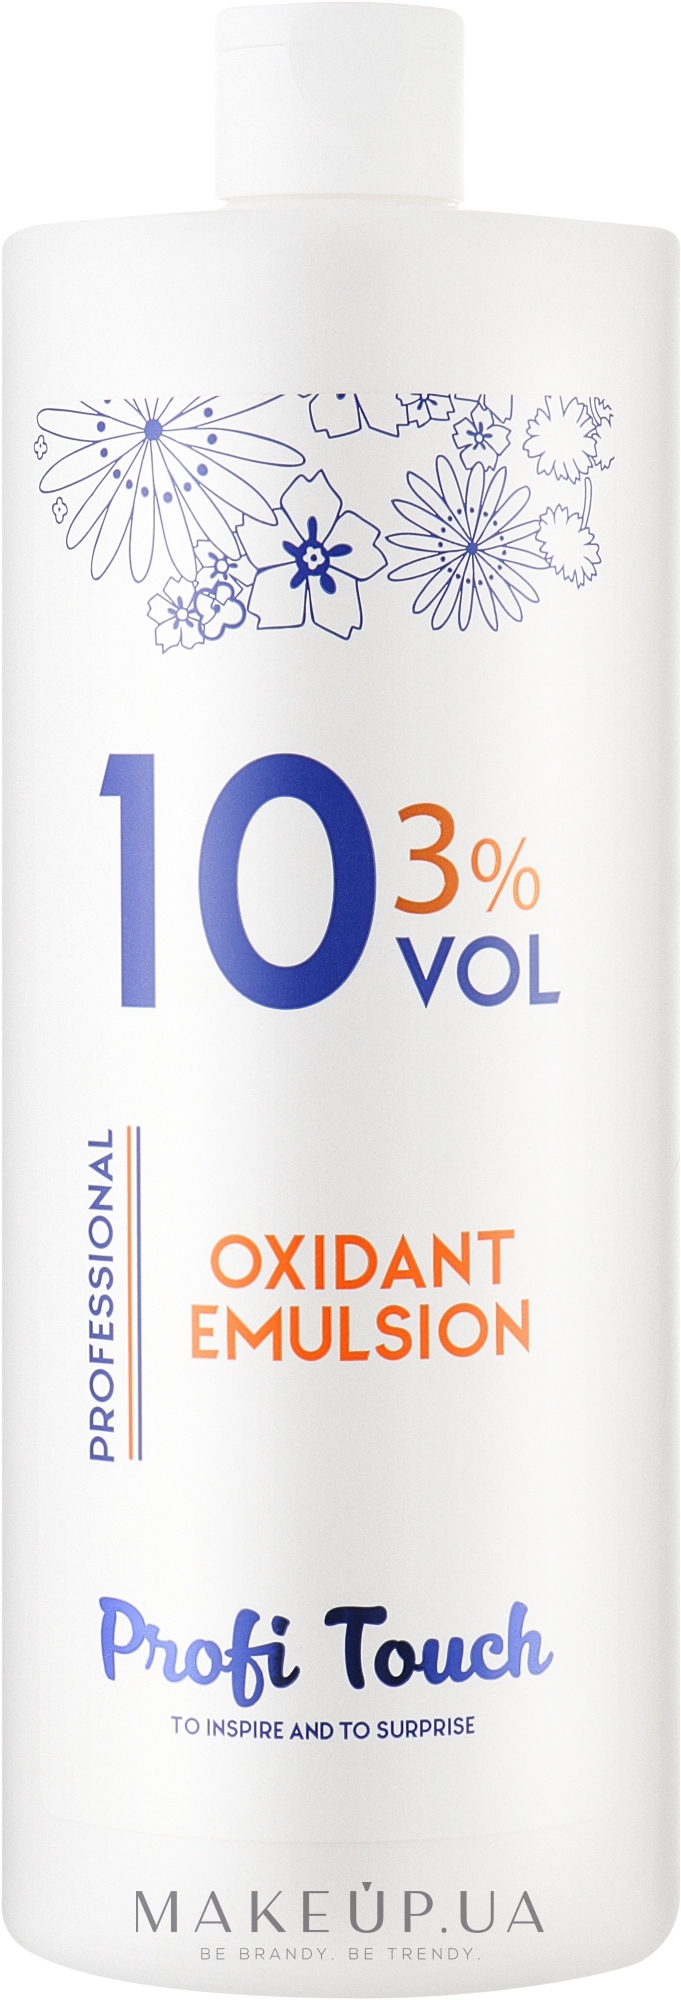 Гель-окислитель 10 vol 3% - Profi Touch Oxidant Emulsion — фото 1000g